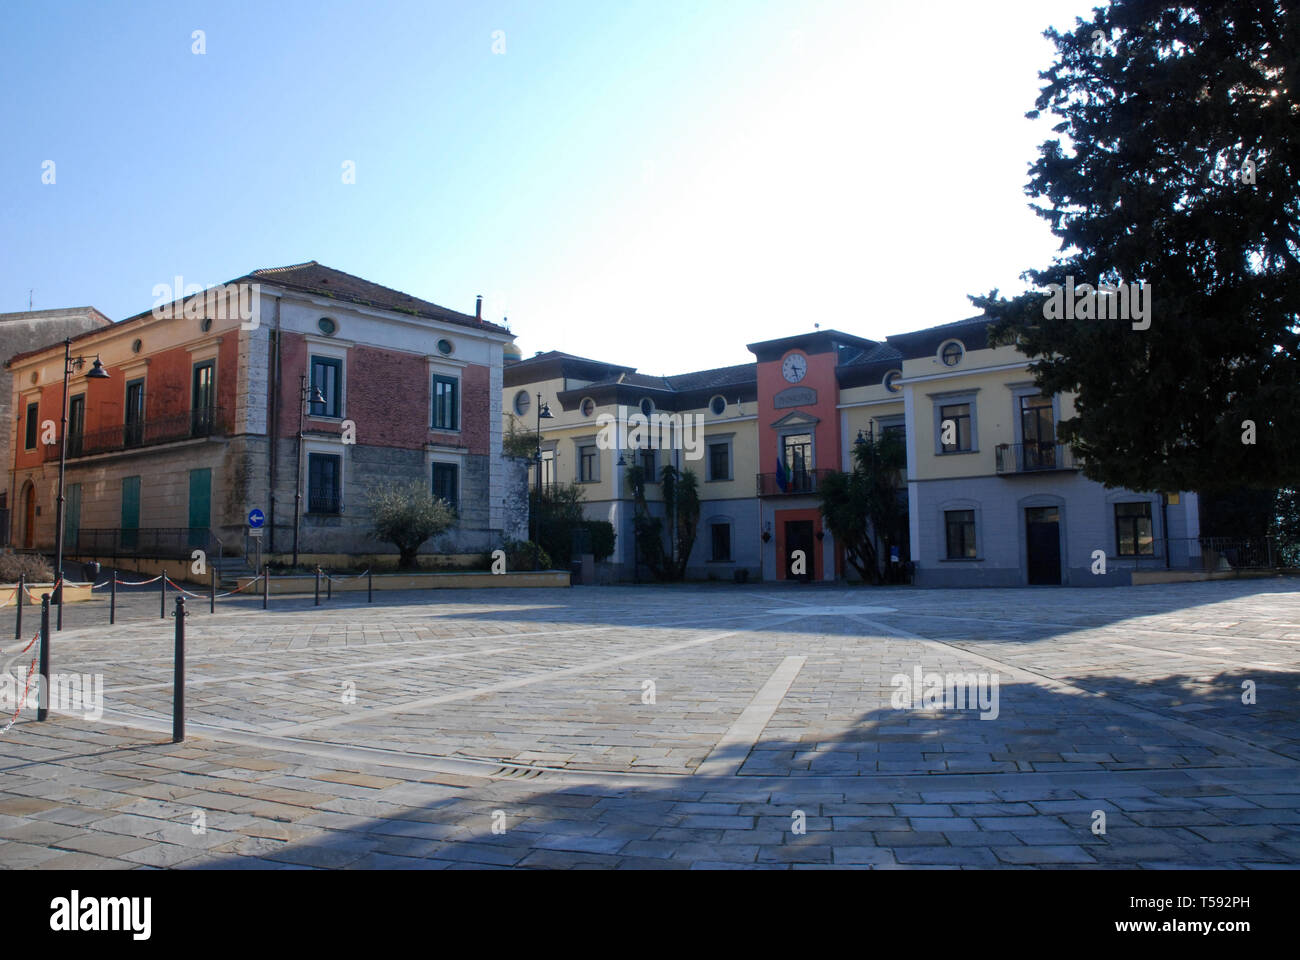 Italy : Urban landscape in Giffoni Sei Casali, February 16, 2019. Stock Photo